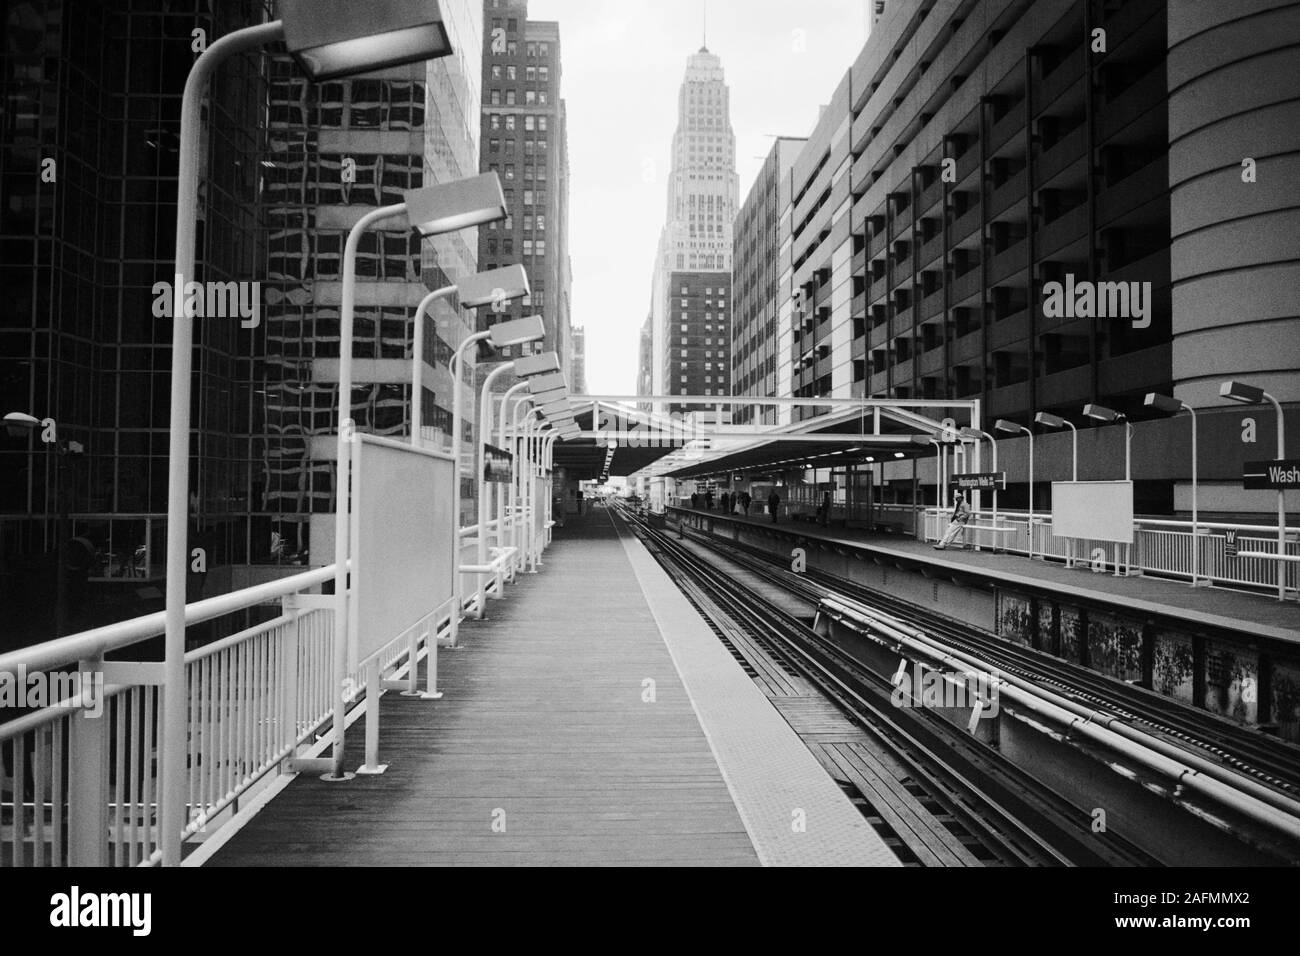 Chicago, Illinois, USA - 1996: Archivierung schwarz-weiß Blick auf die Innenstadt von Architektur und erhöhten Transit Train Tracks der Washington Brunnen entfernt. Stockfoto